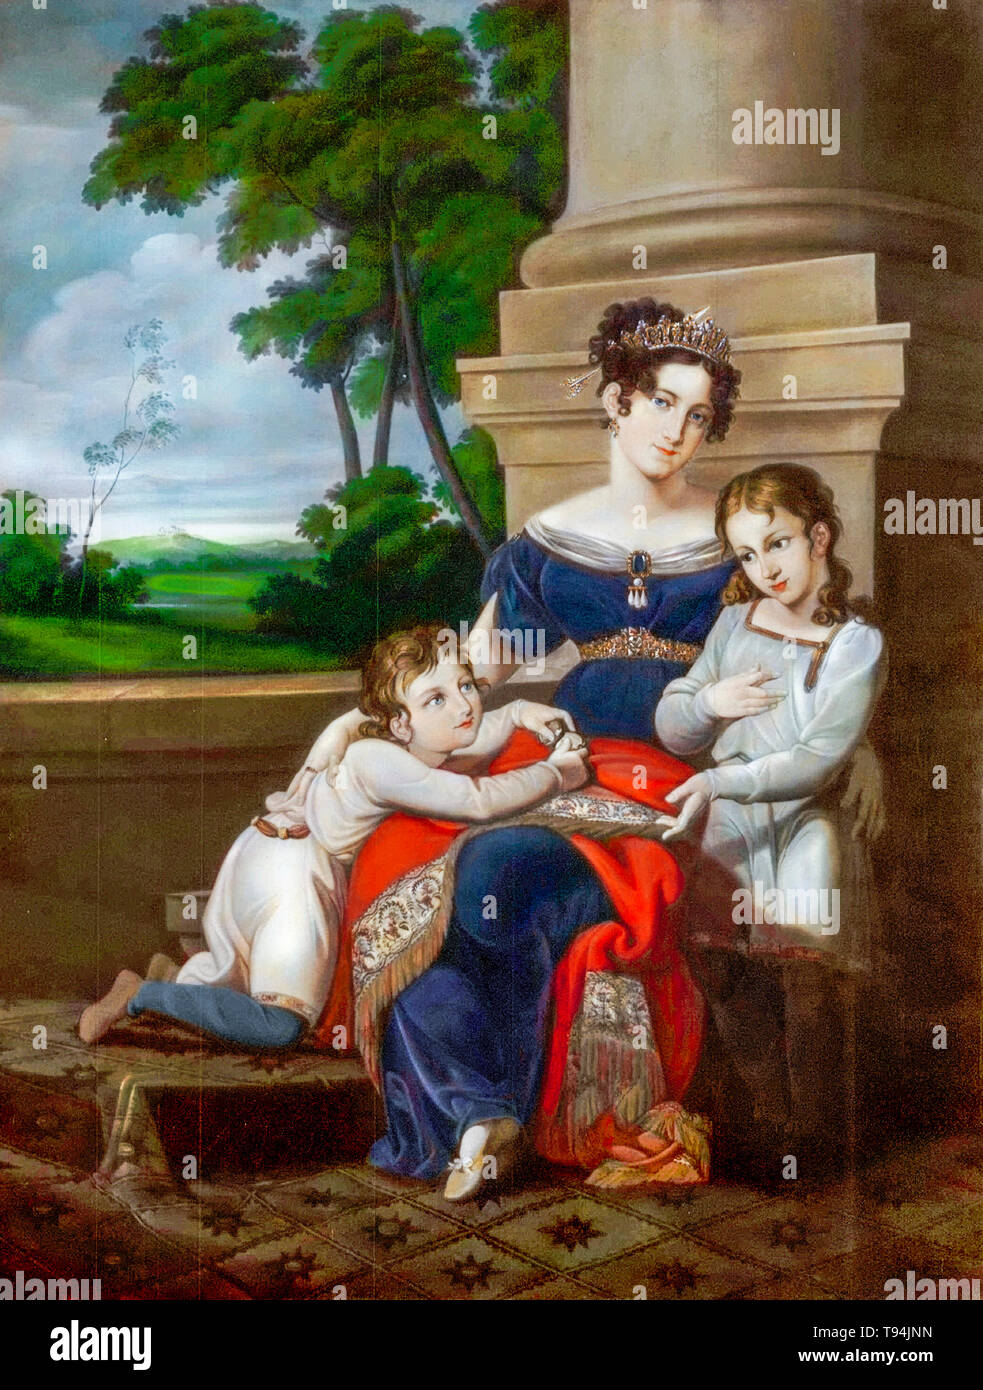 Luisa di Sassonia-Gotha-Altenburg (1800-1831), duchessa di Sassonia-Coburg e Gotha, con i suoi figli, Alberto (1819-1861), futuro marito della regina Vittoria, ed Ernest (1818-1893), futuro duca di Sassonia-Coburg e Gotha, ritratto di famiglia di Ludwig Döll, circa 1823 Foto Stock